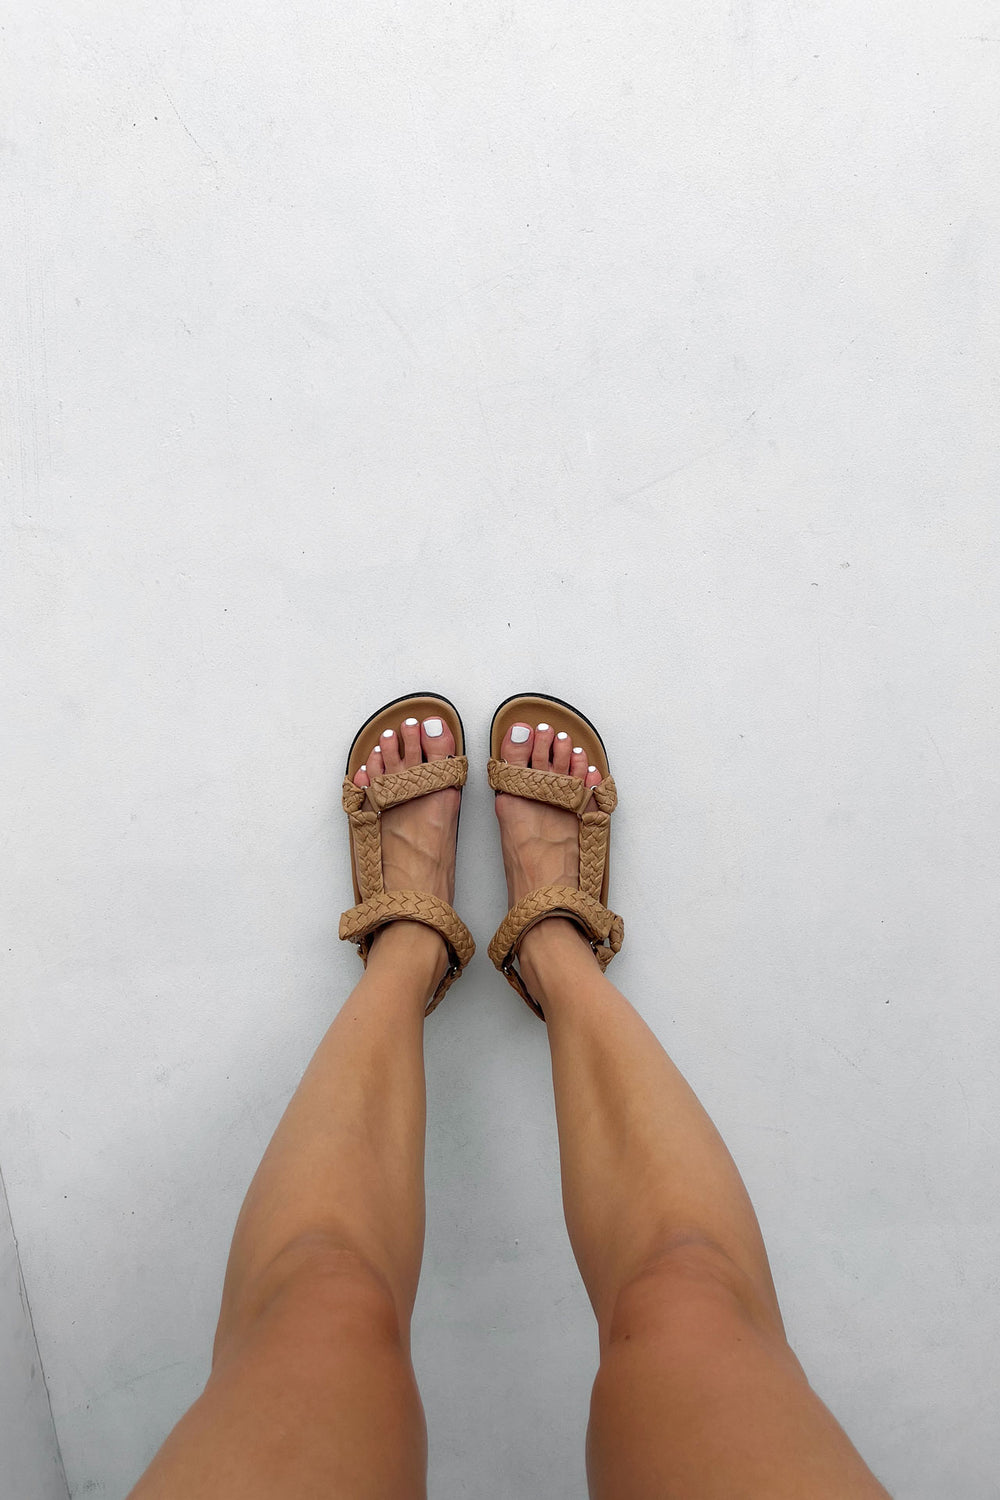 Indie Sandals - Tan